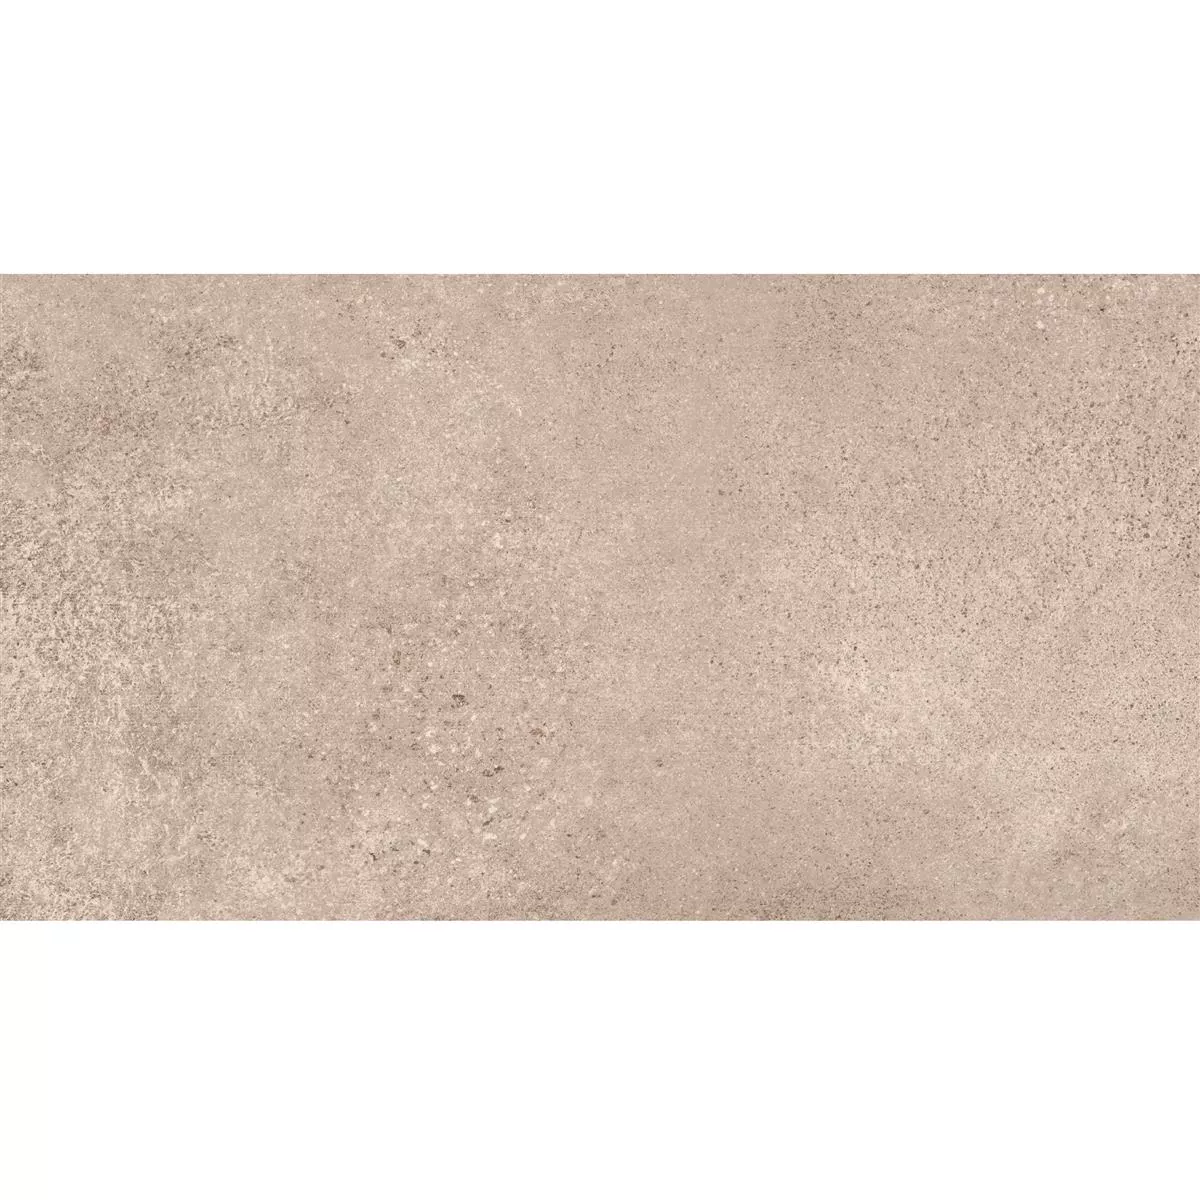 Padrão de Ladrilhos Olhar de Pedra Riad Fosco R9 Marrom Claro 30x60cm 